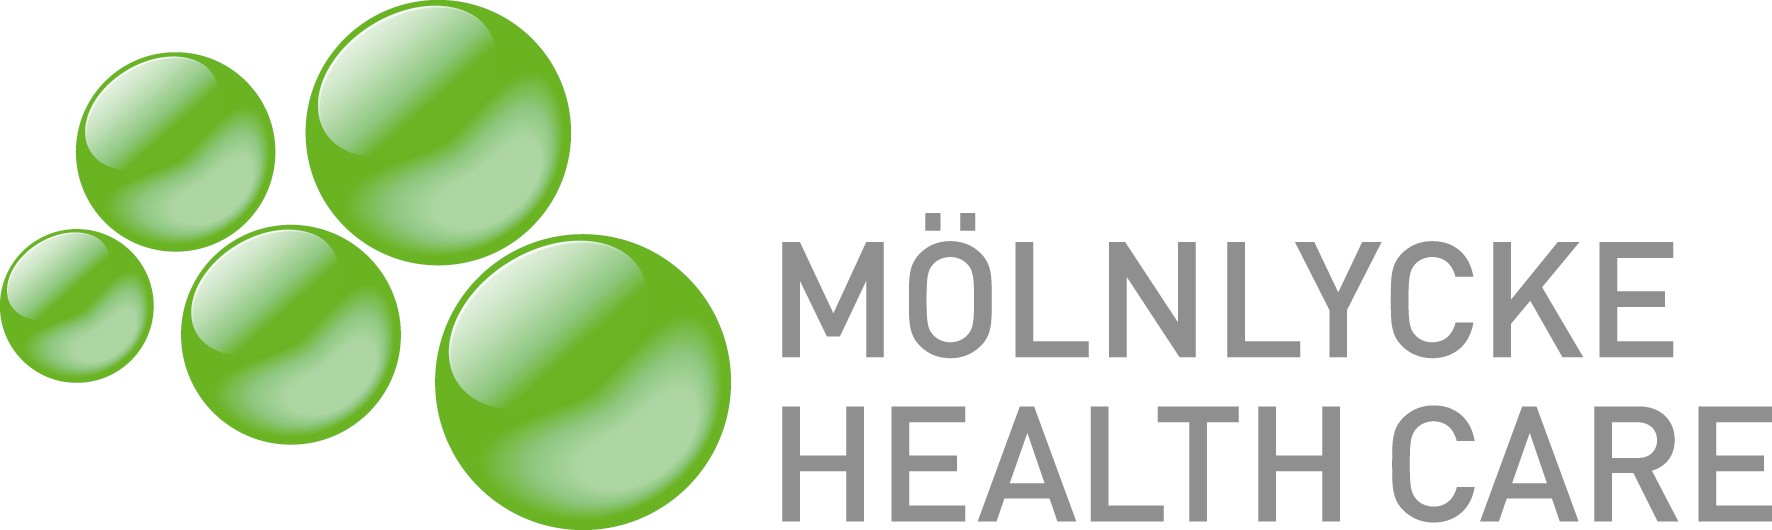 Logotipo de Mölnlycke Health Care